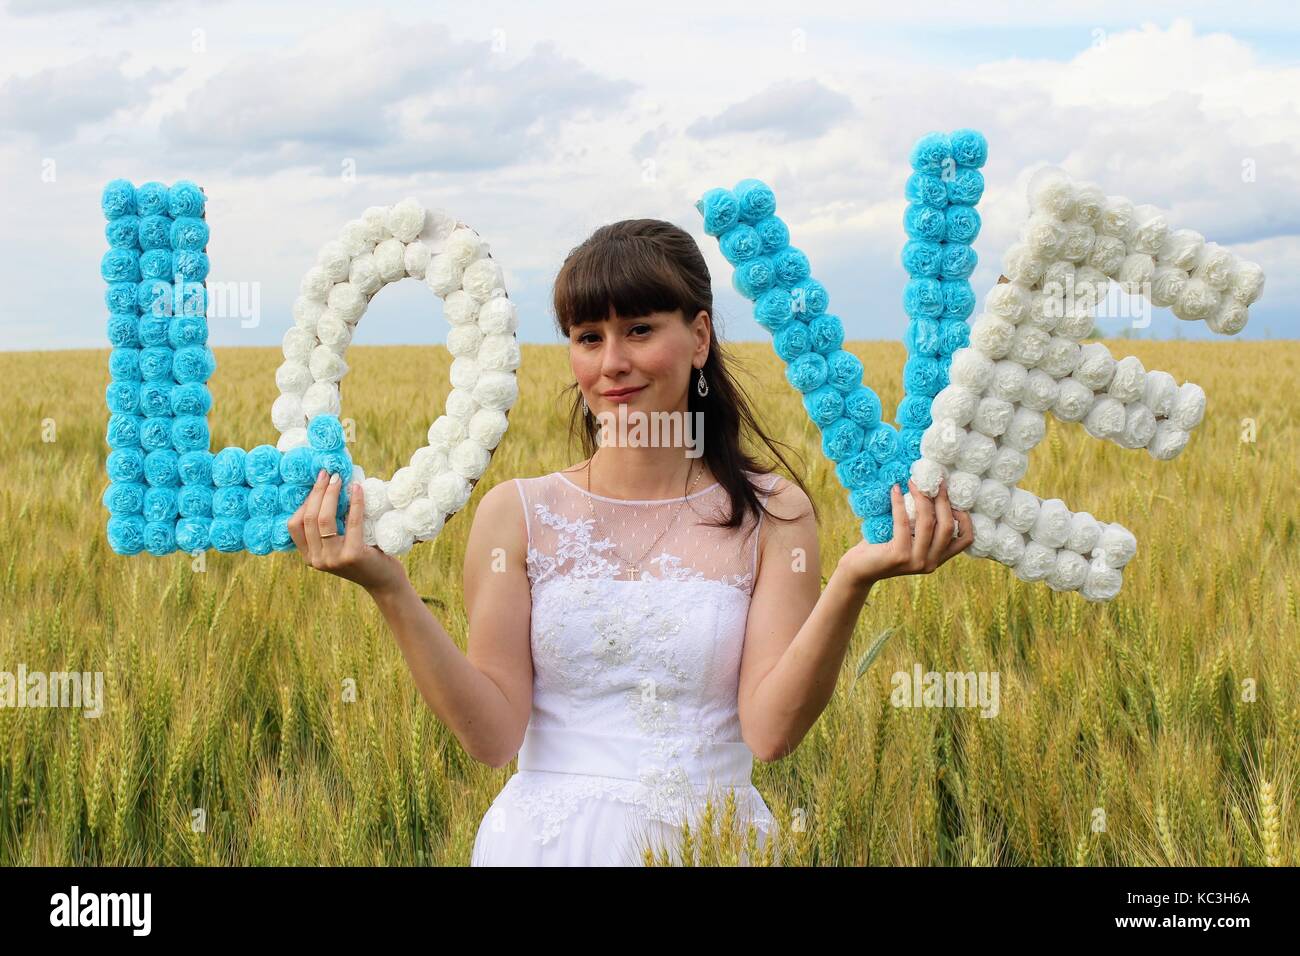 Una chica en un vestido de novia es la celebración de las letras 'amor' de pie contra un campo de trigo y cielo azul. Foto de stock